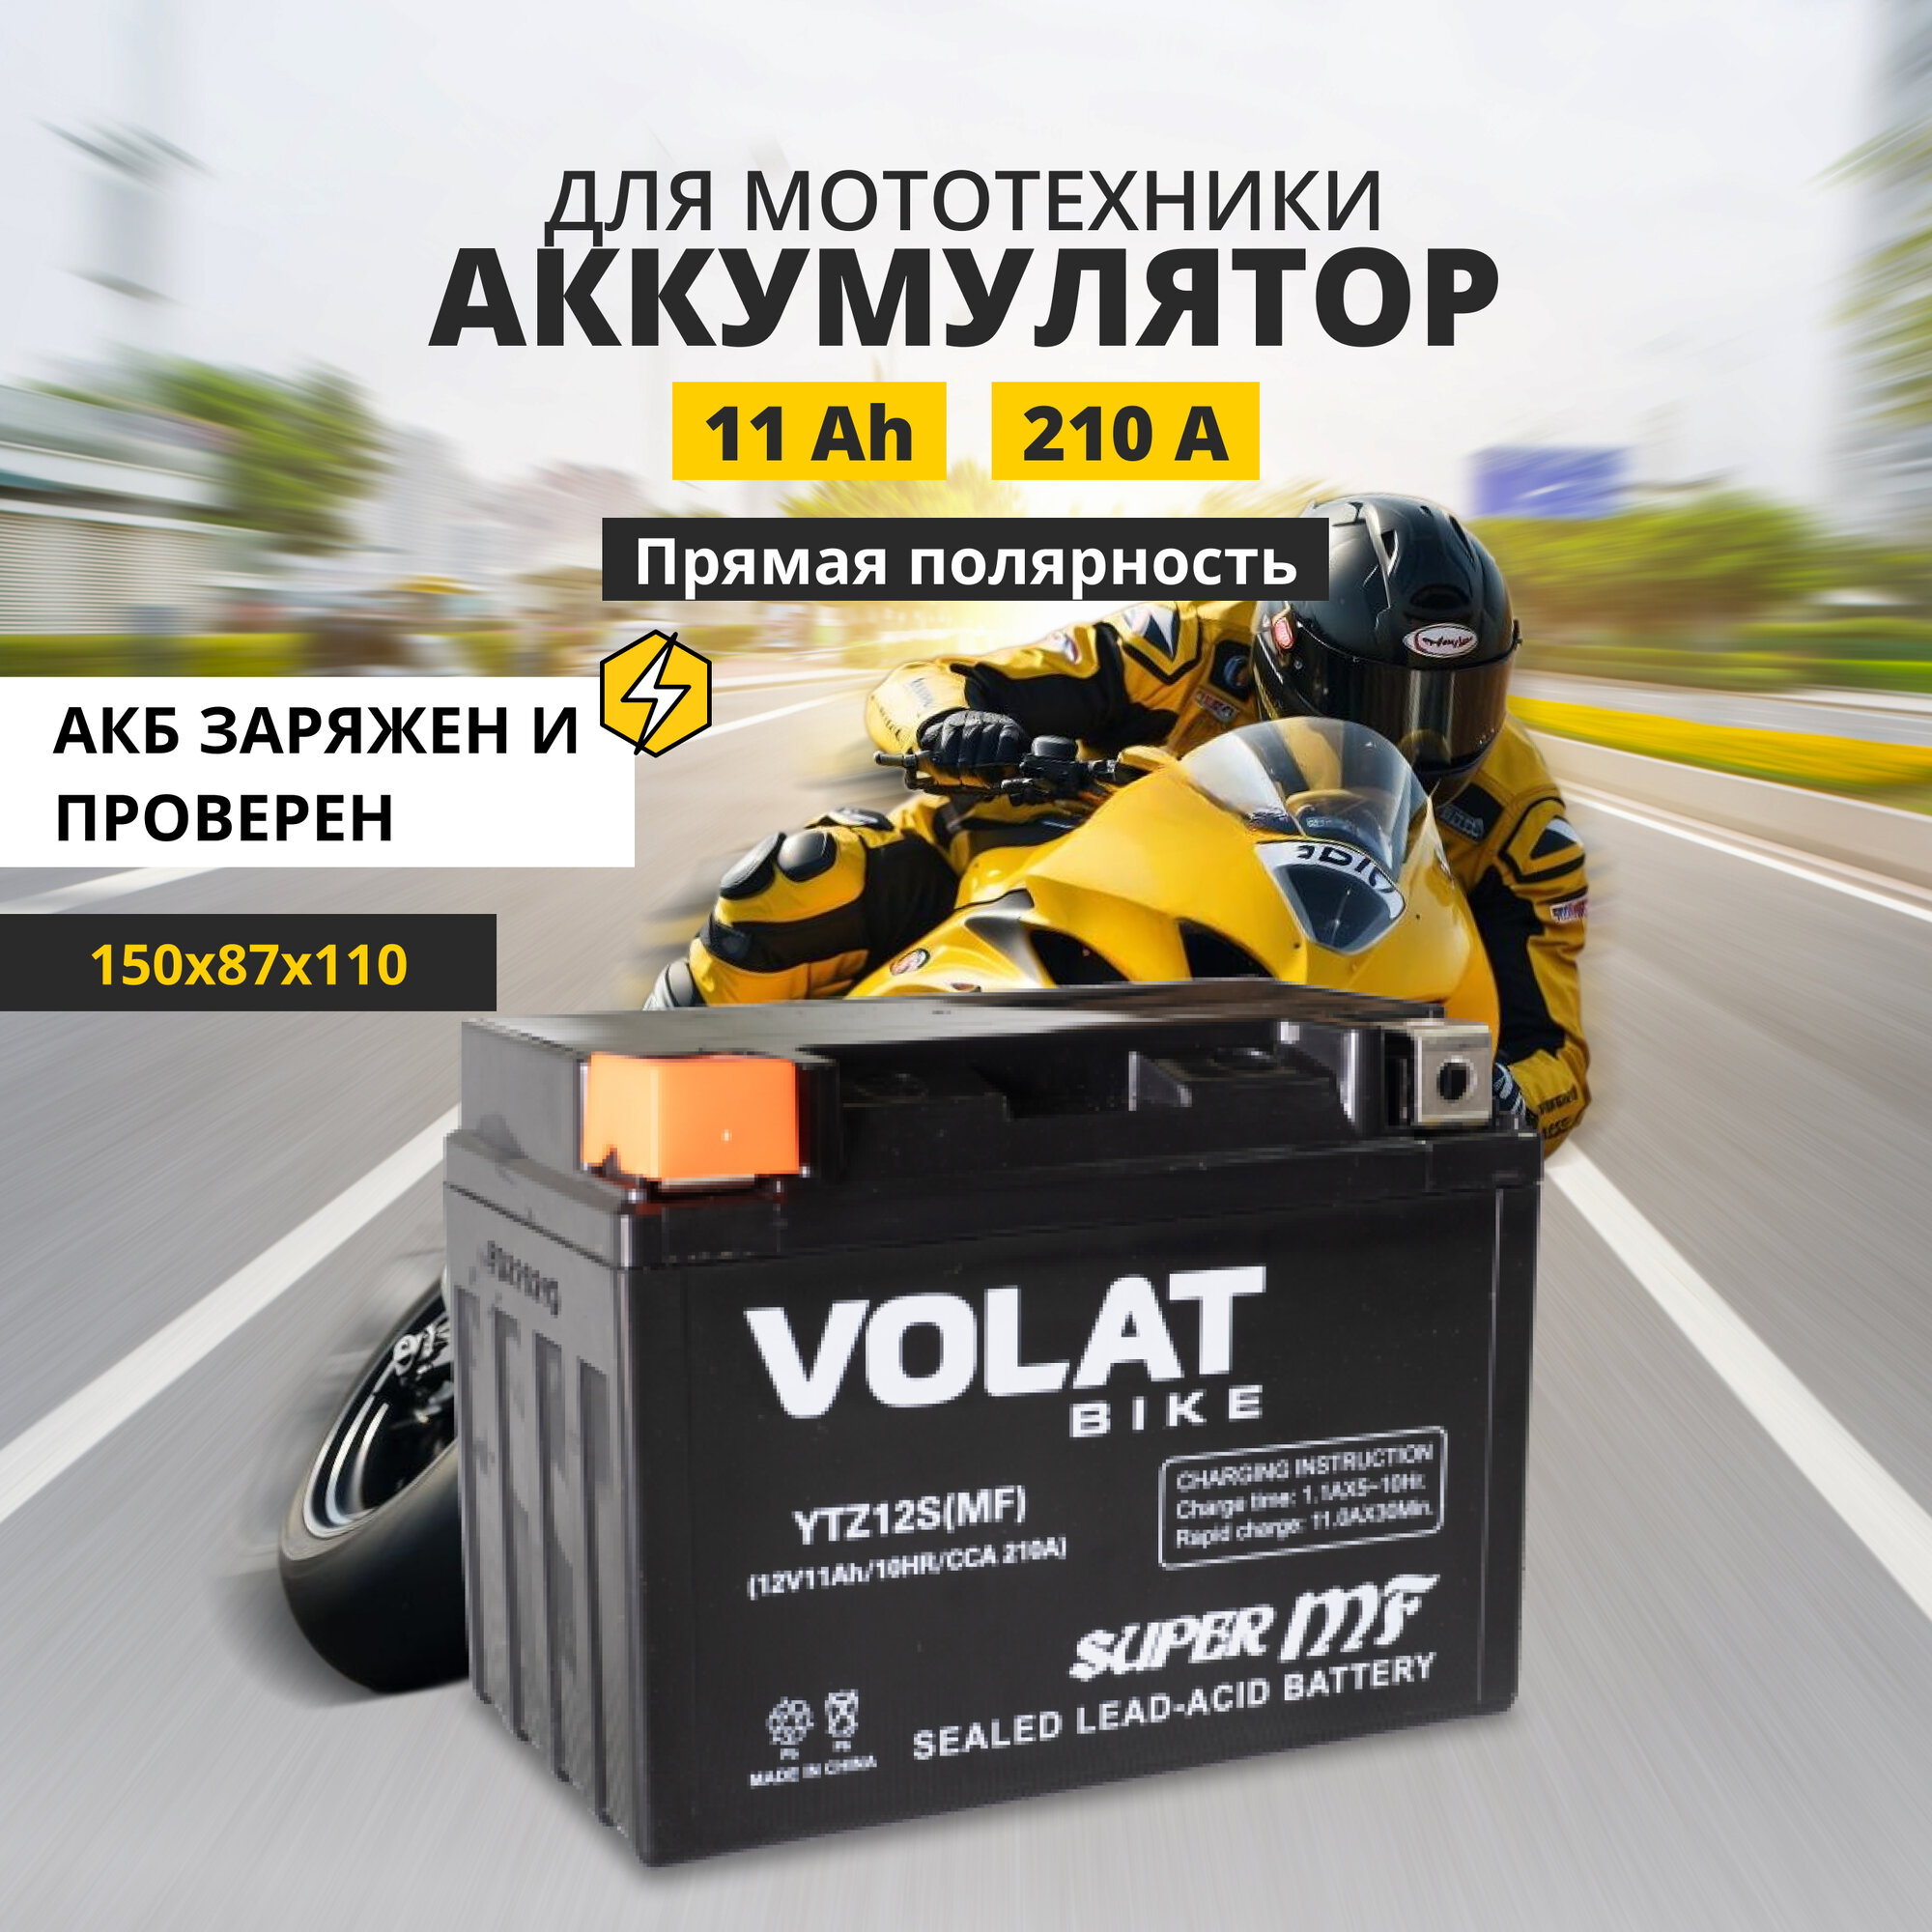 Аккумулятор для мотоцикла 12v Volat YTZ12S(MF) прямая полярность 11 Ah 210 A AGM акб на скутер мопед квадроцикл 150x87x110 мм